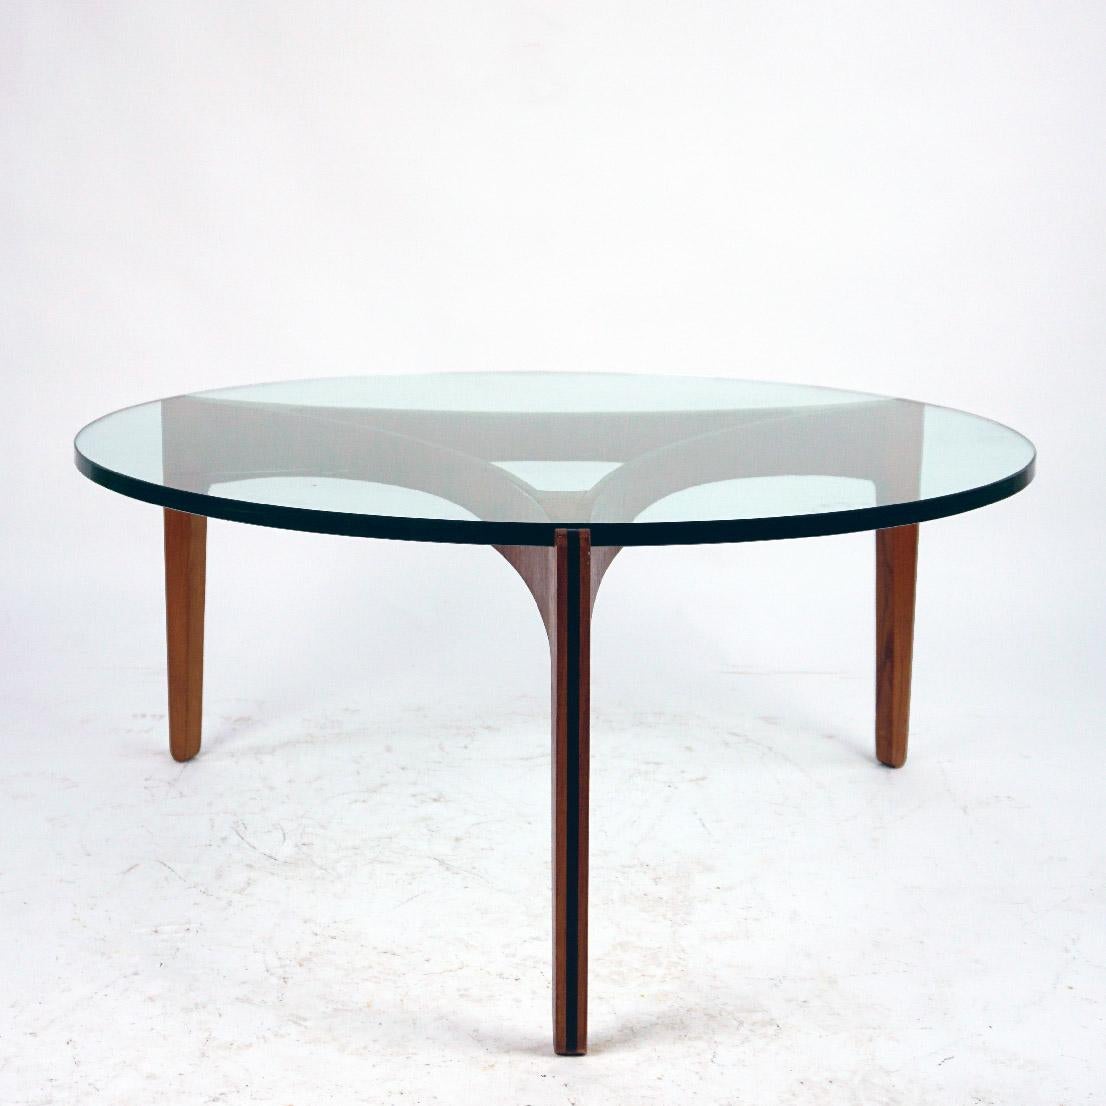 Cette étonnante table basse circulaire modèle 104 a été conçue par Sven Ellekaer pour Chirstian Linneberg, Danemark 1962. Cette exquise table basse est composée d'une belle et élégante base en bois de teck courbé qui supporte un épais plateau en